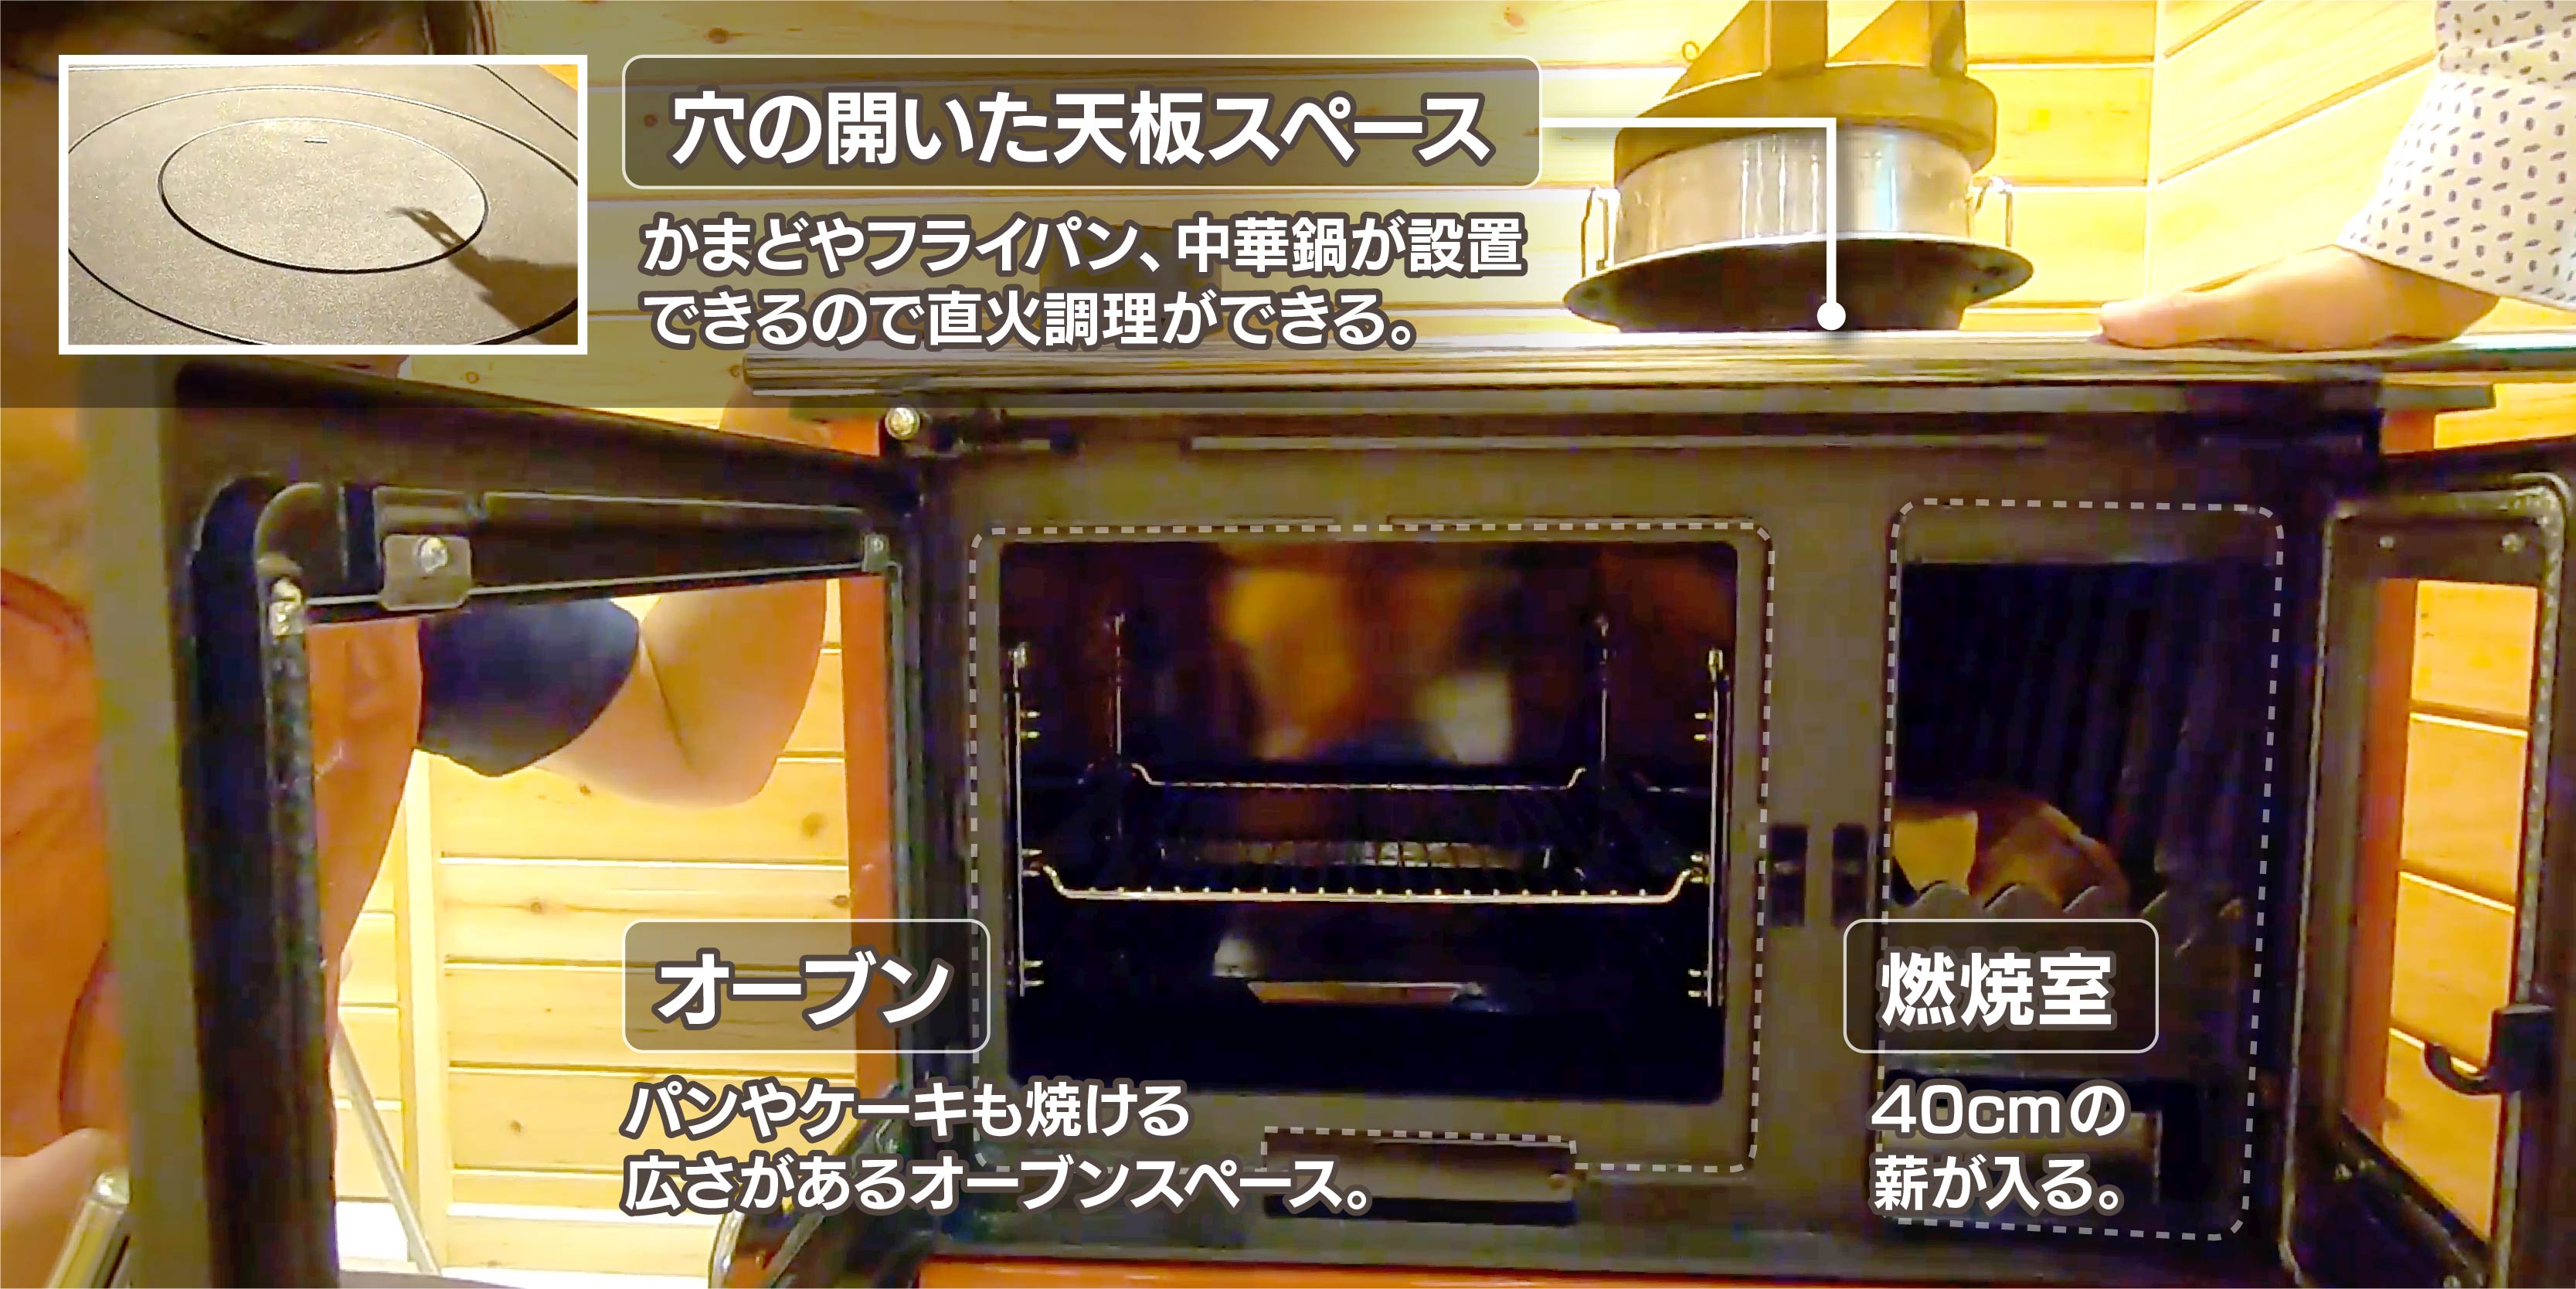 熱効率が良い鋳物でできた燃焼室とオーブン